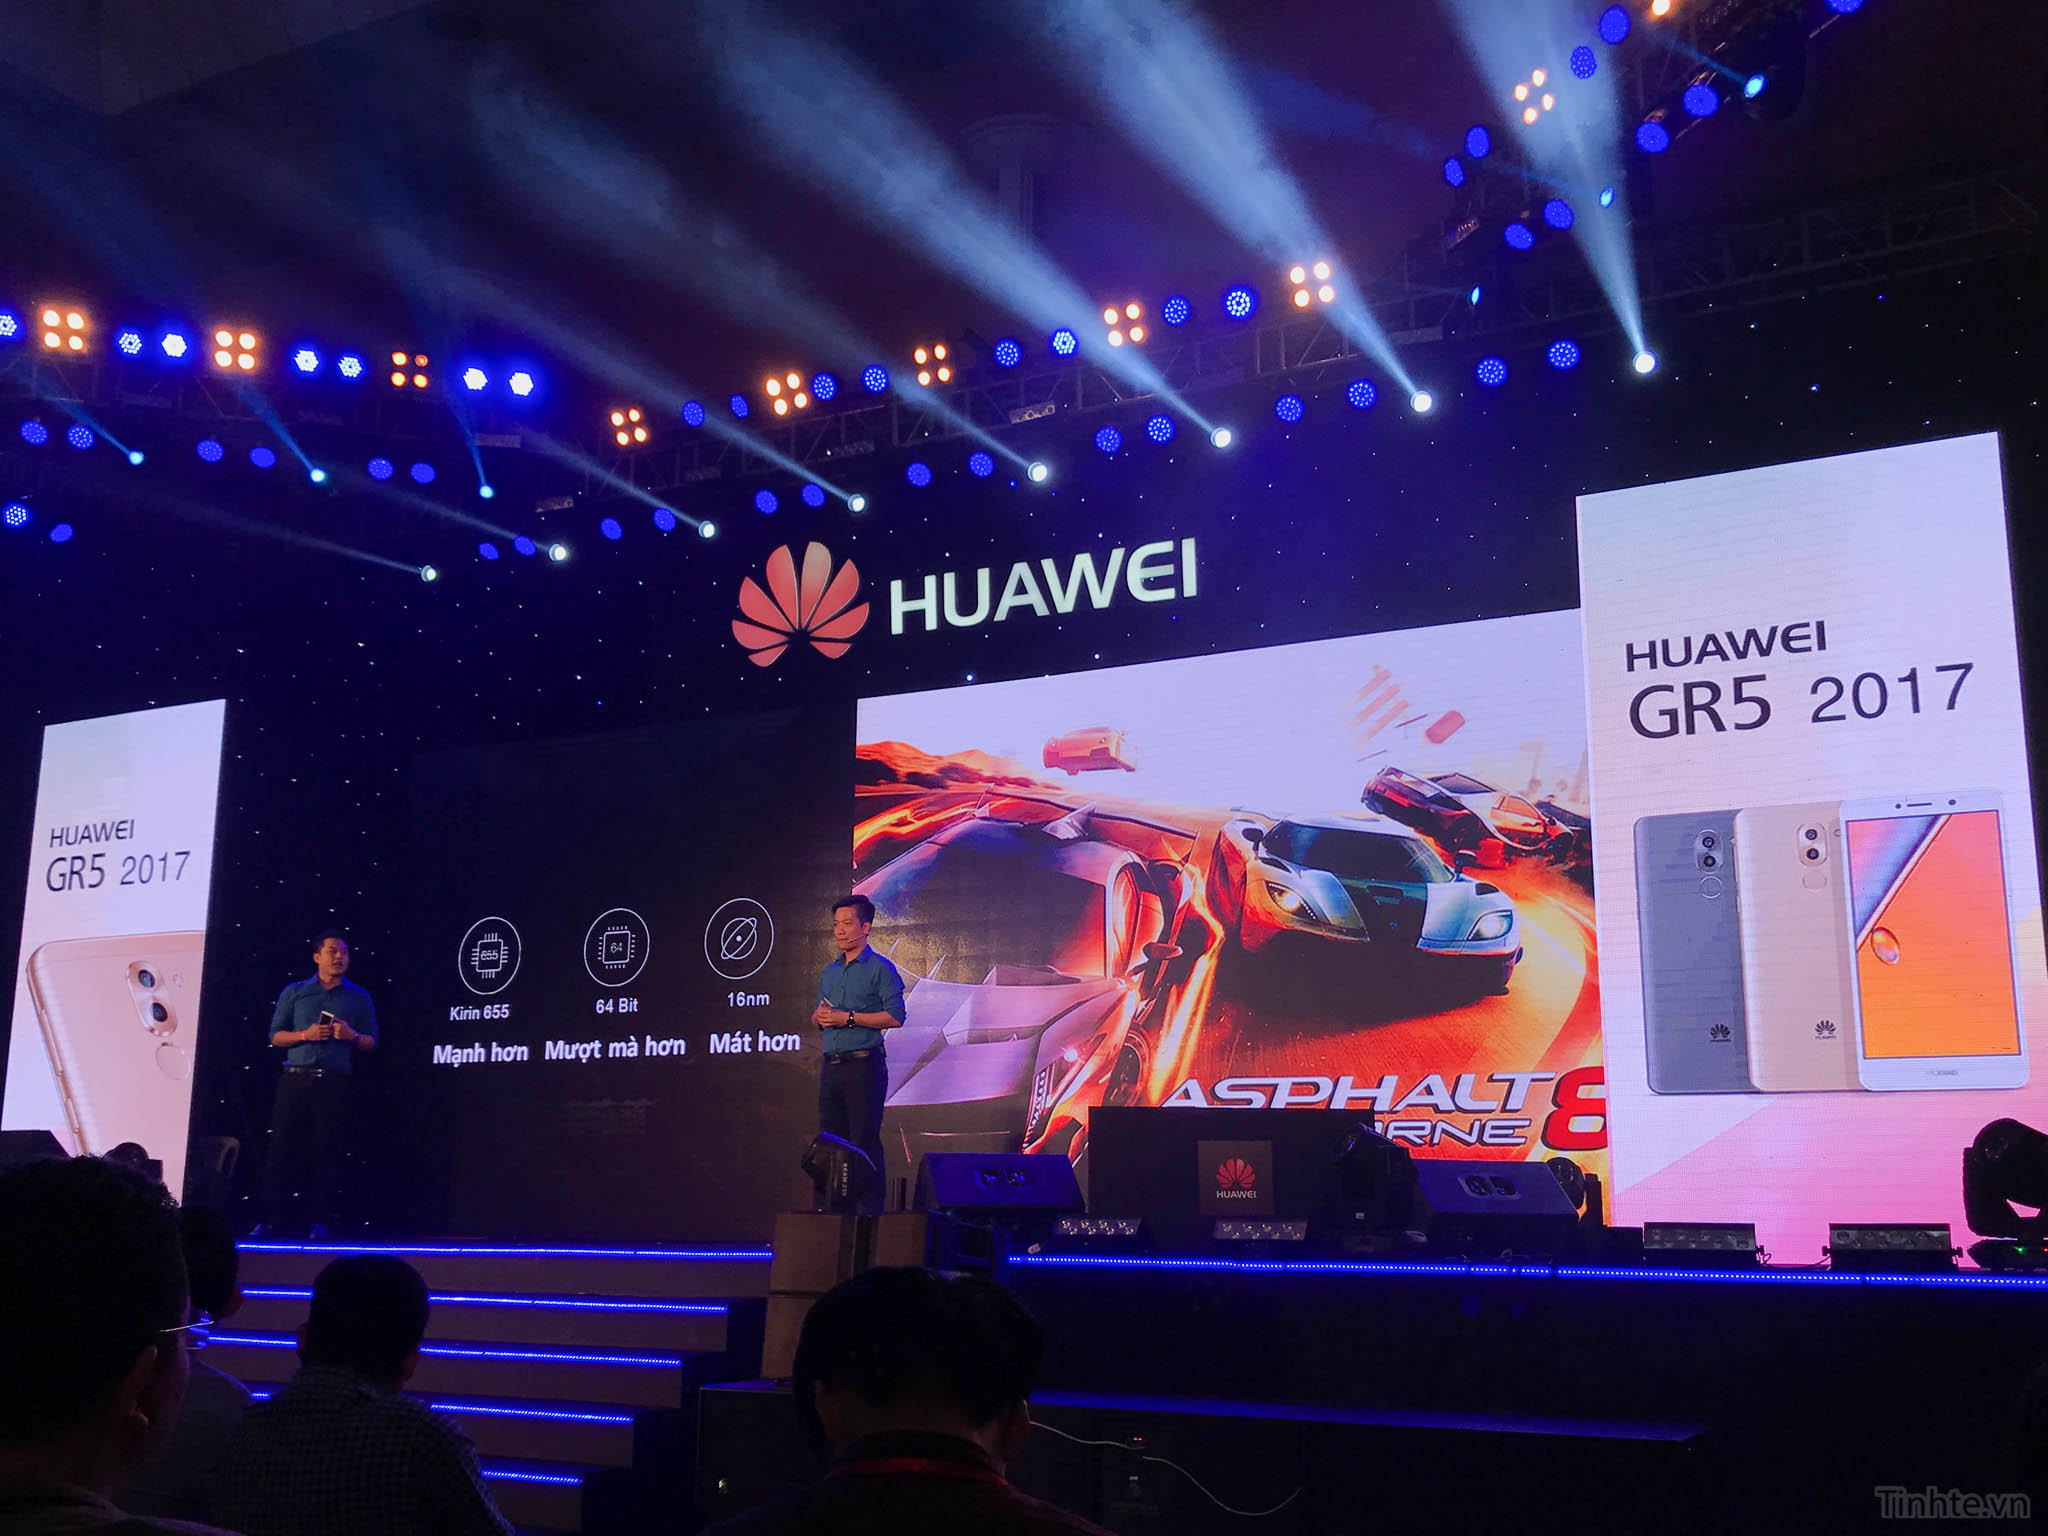 Huawei_GR5_2017_chinh_hang_tinhte.vn-8.jpg